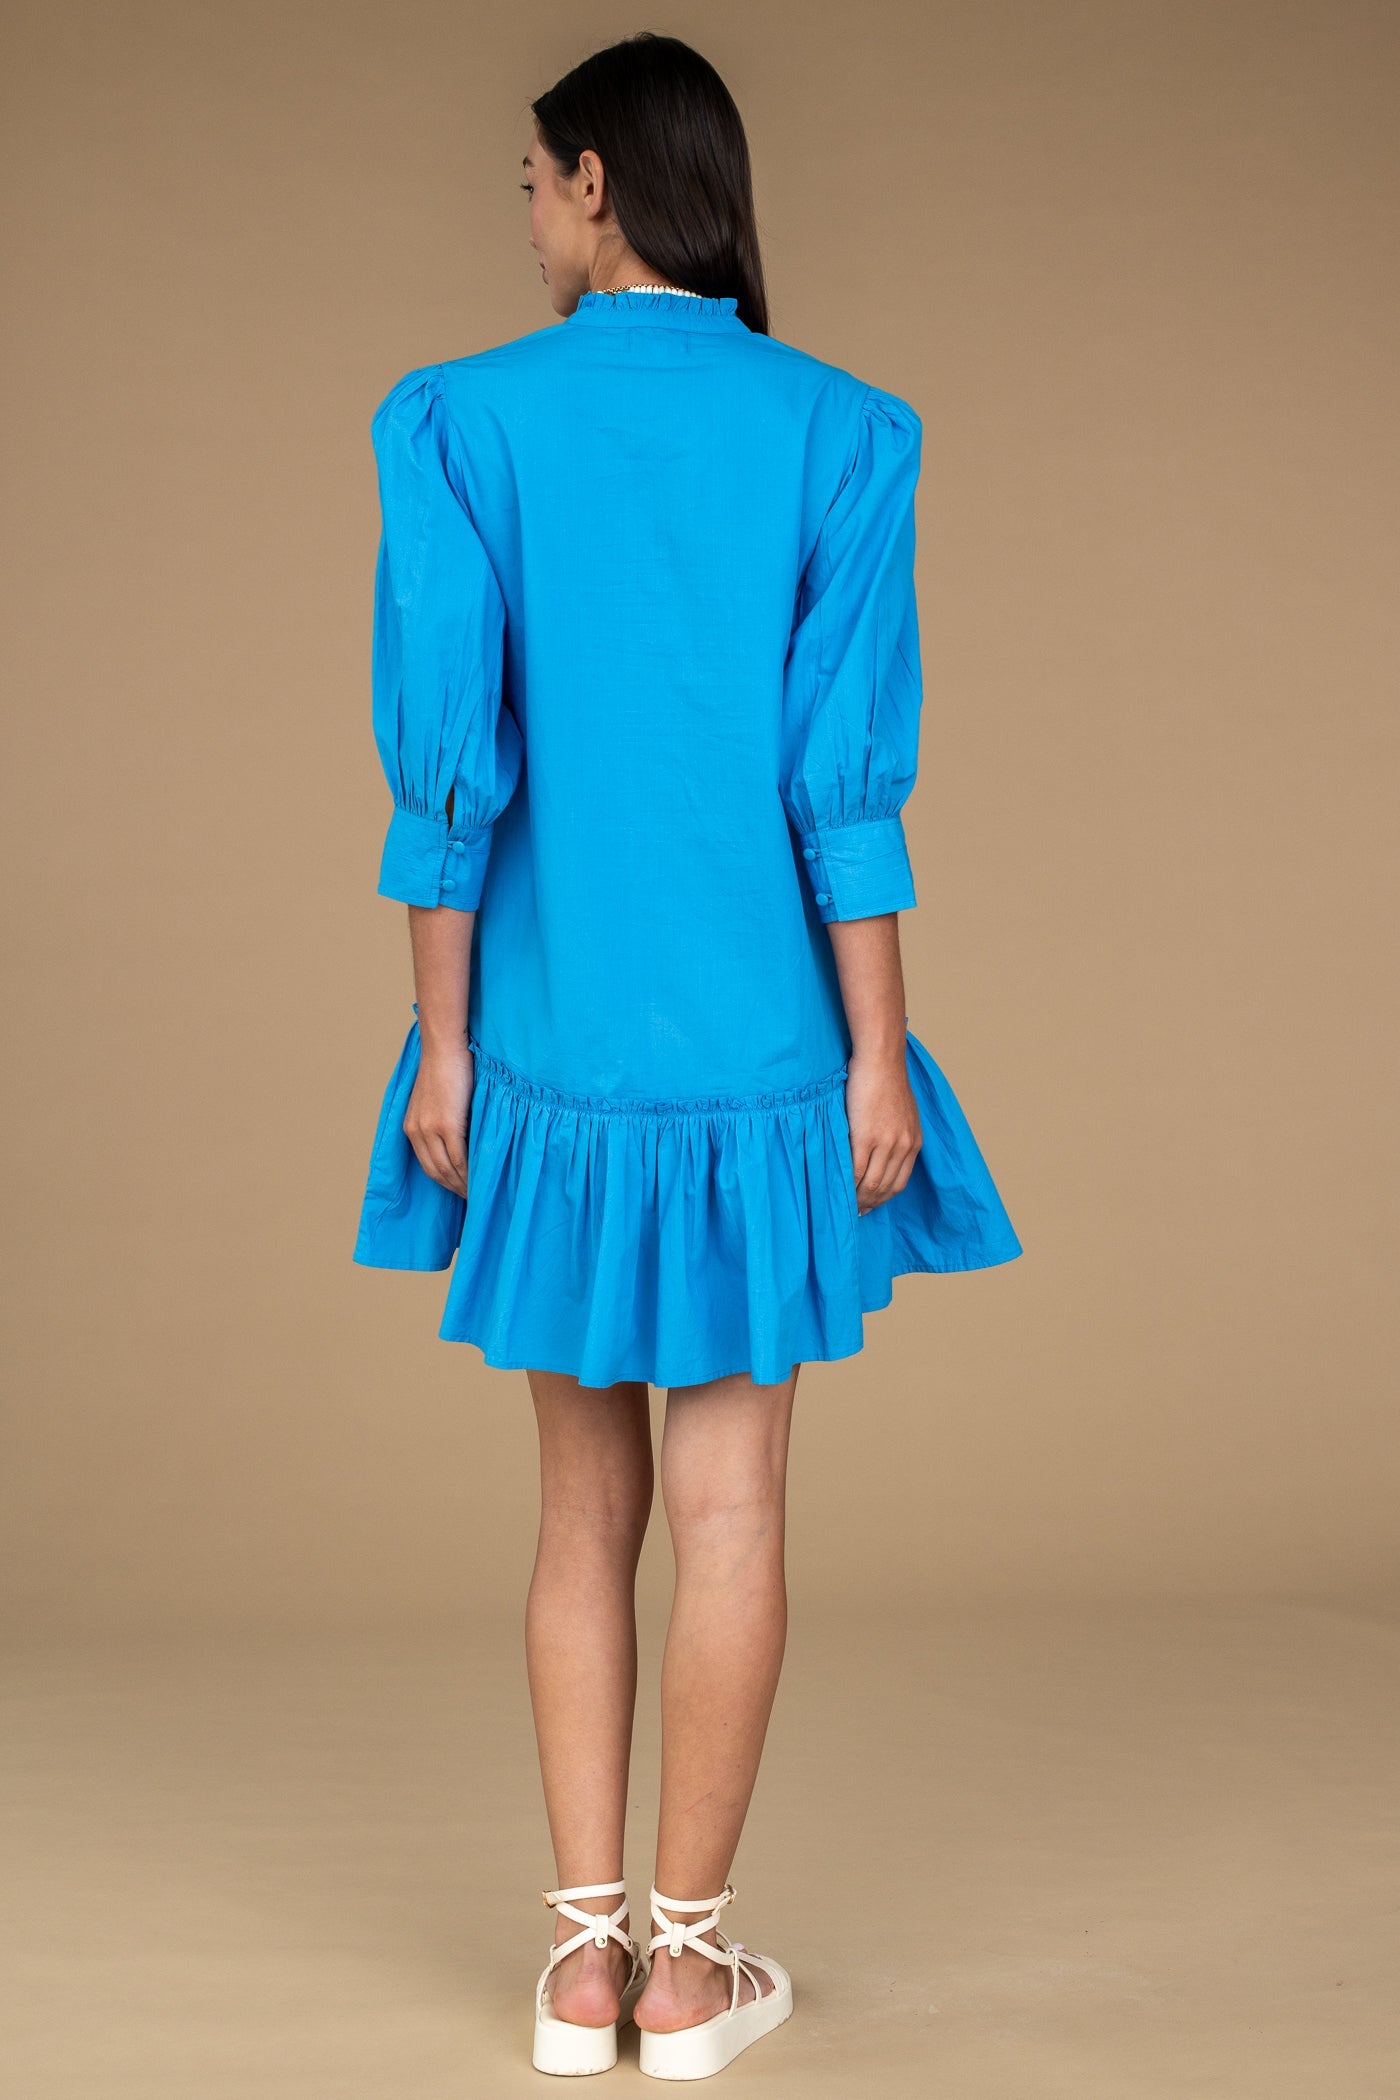 Olivia James - Chloe Dress in Mykonos Blue